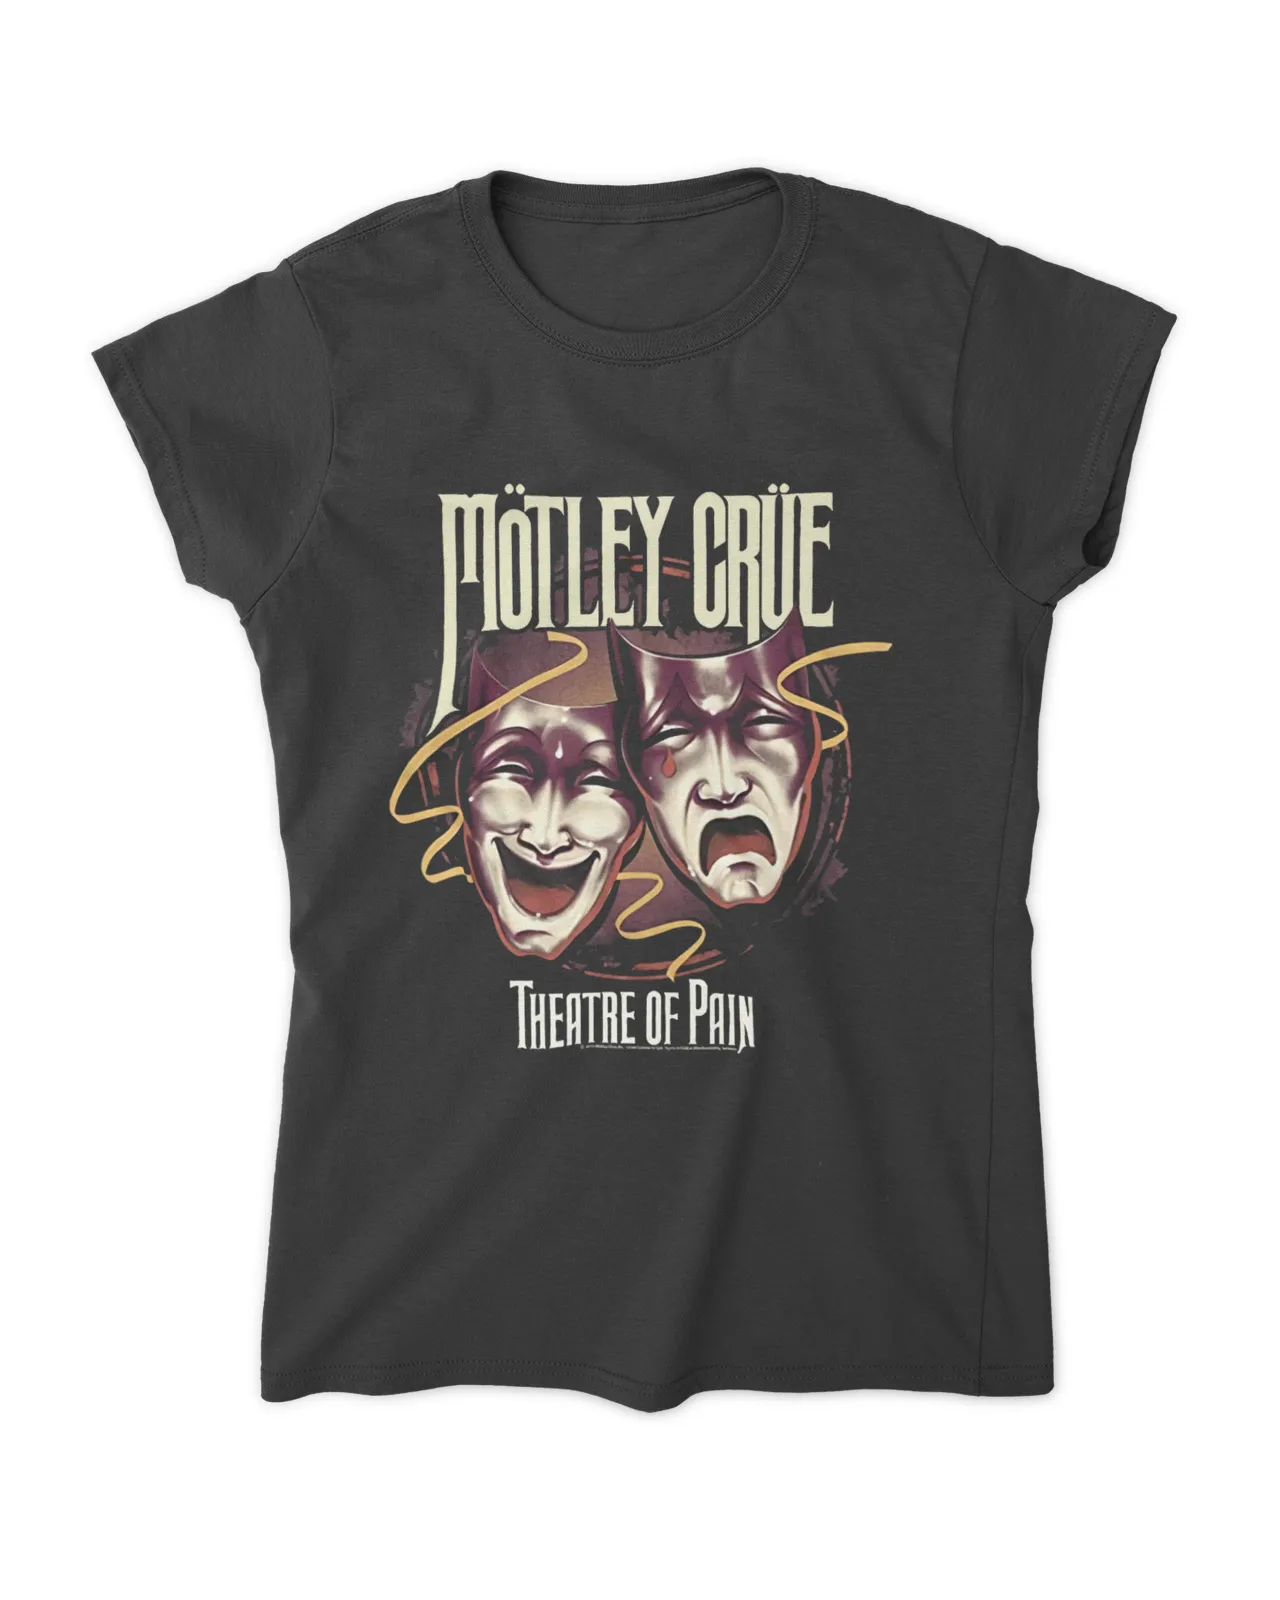 Motley Crue Theatre Of Pain Shirt